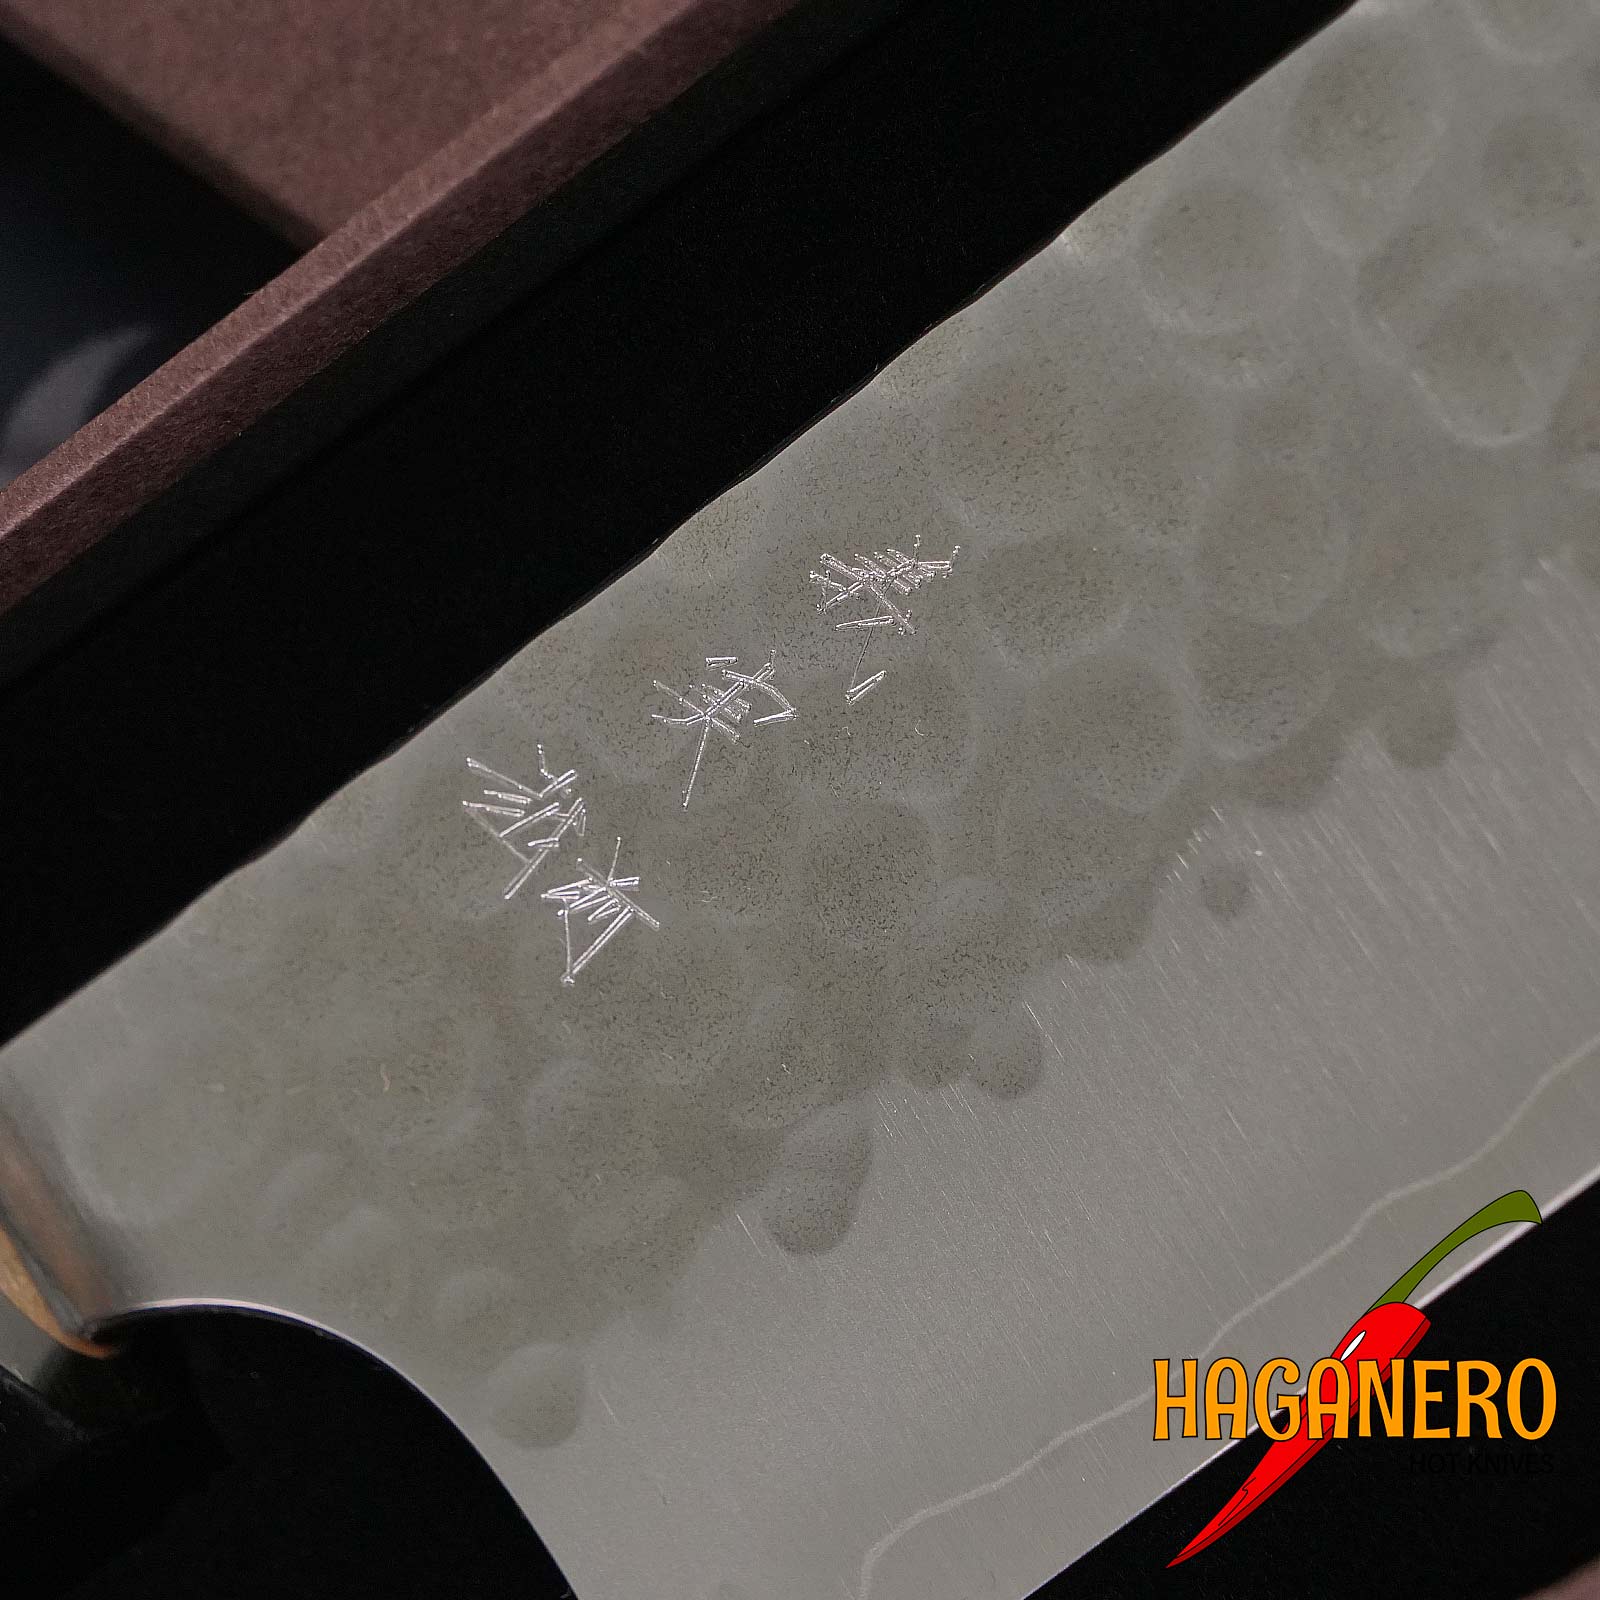 Gyuto Japanese kitchen knife Yoshimi Kato Hammered polished SG2 D-1505 21cm